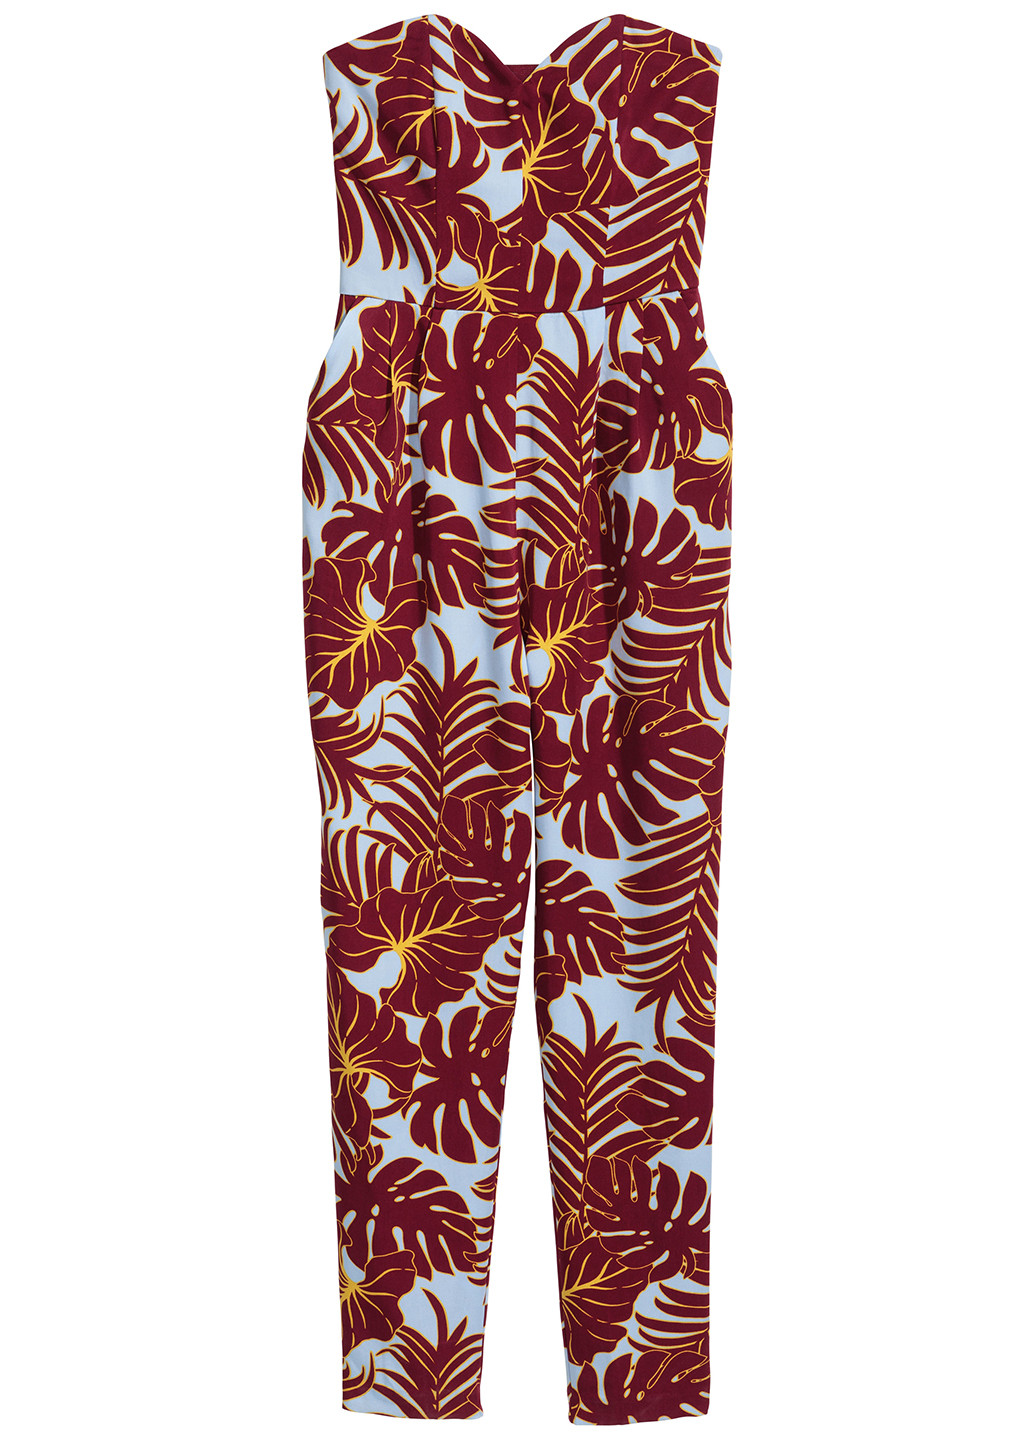 Комбинезон H&M комбинезон-брюки комбинированный вечерний лиоцелл